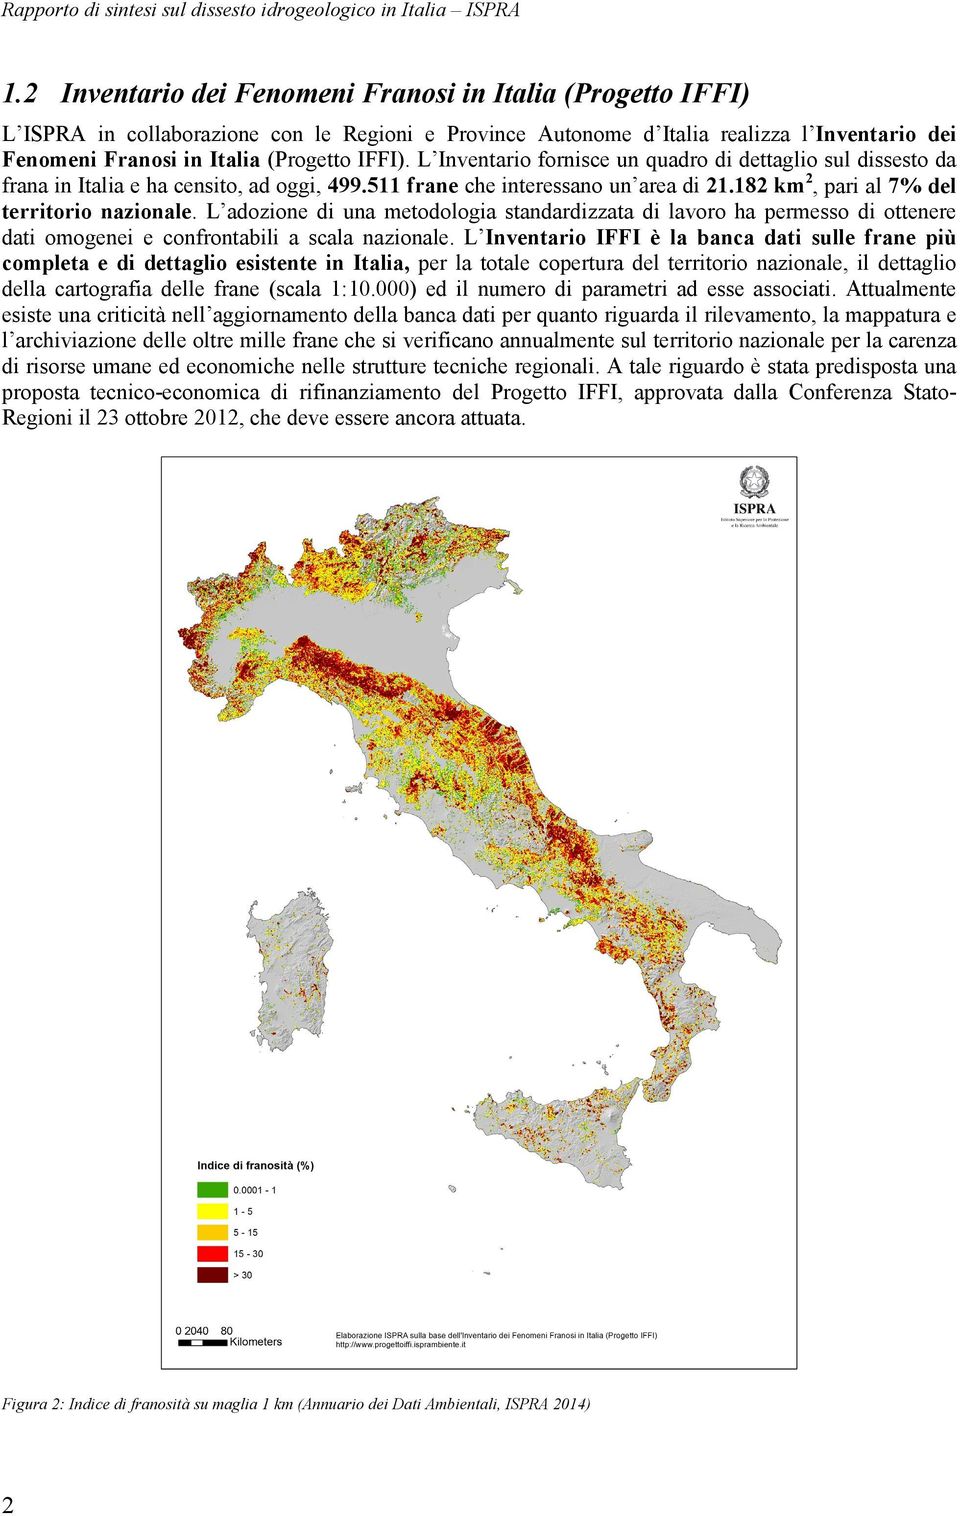 L Inventario fornisce un quadro di dettaglio sul dissesto da frana in Italia e ha censito, ad oggi, 499.511 frane che interessano un area di 21.182 km2, pari al 7% del territorio nazionale.